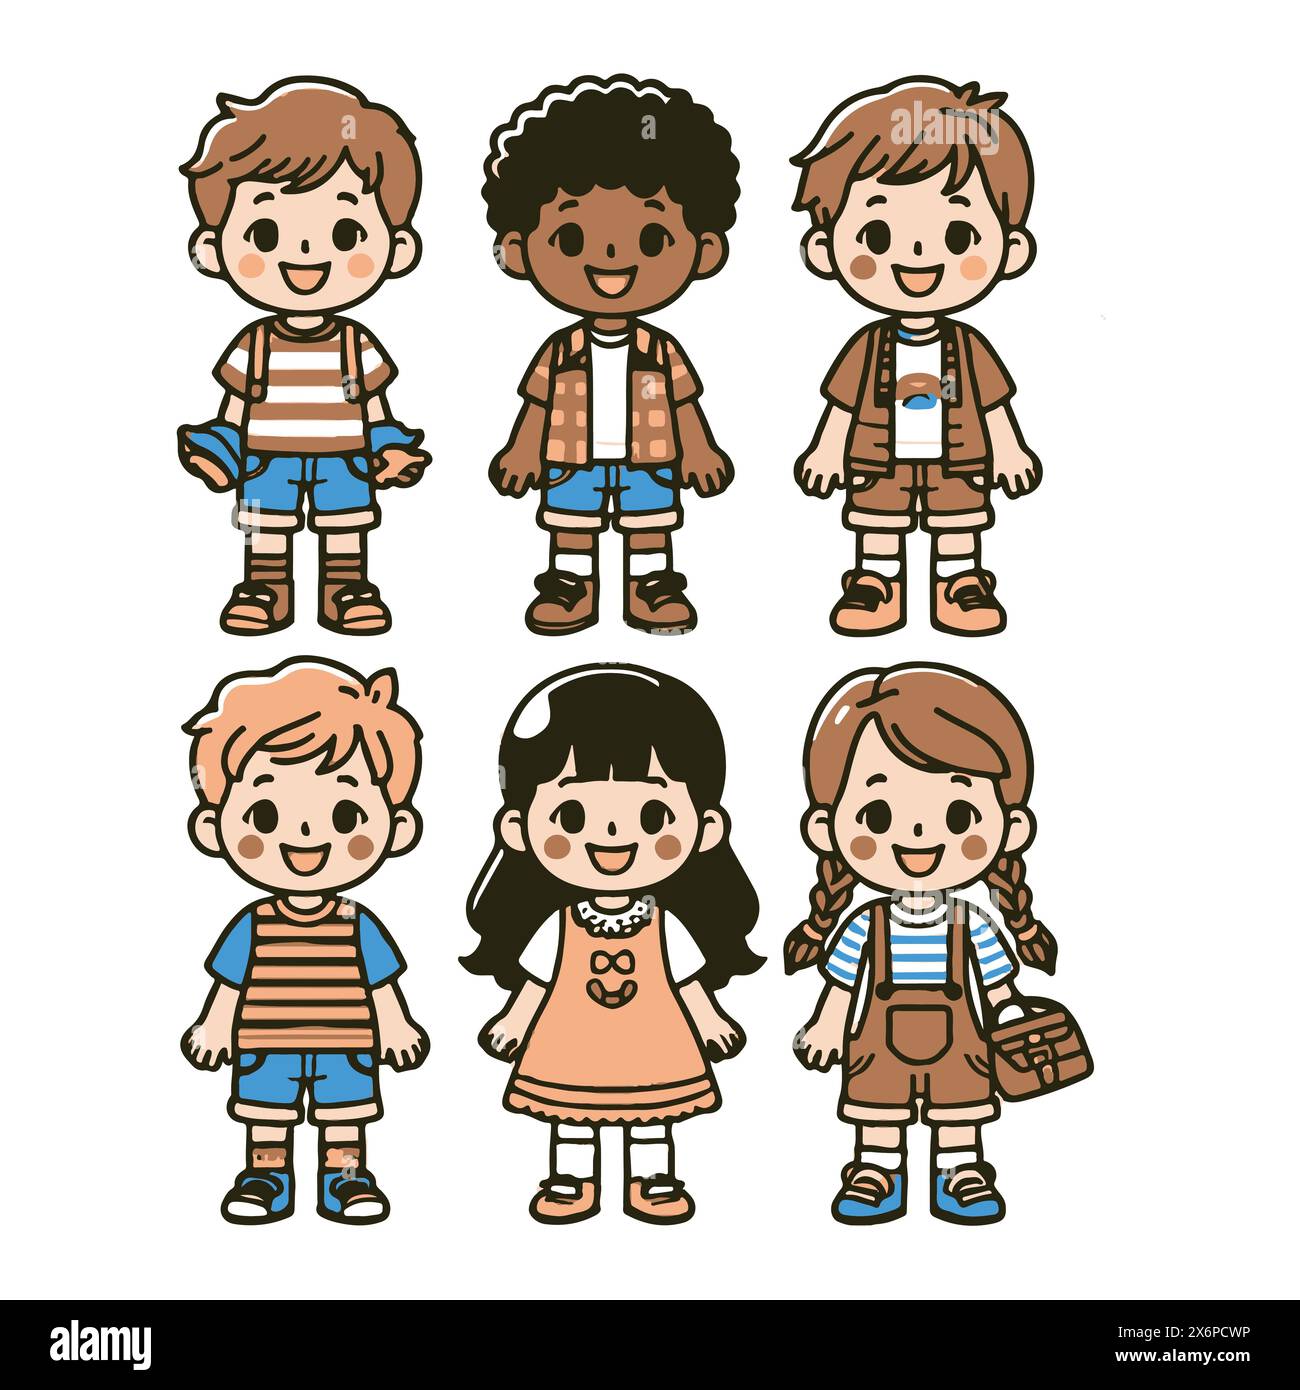 Charming Collection of Child Character Vector Illustrations: Espressioni diverse per design creativi e divertenti Illustrazione Vettoriale